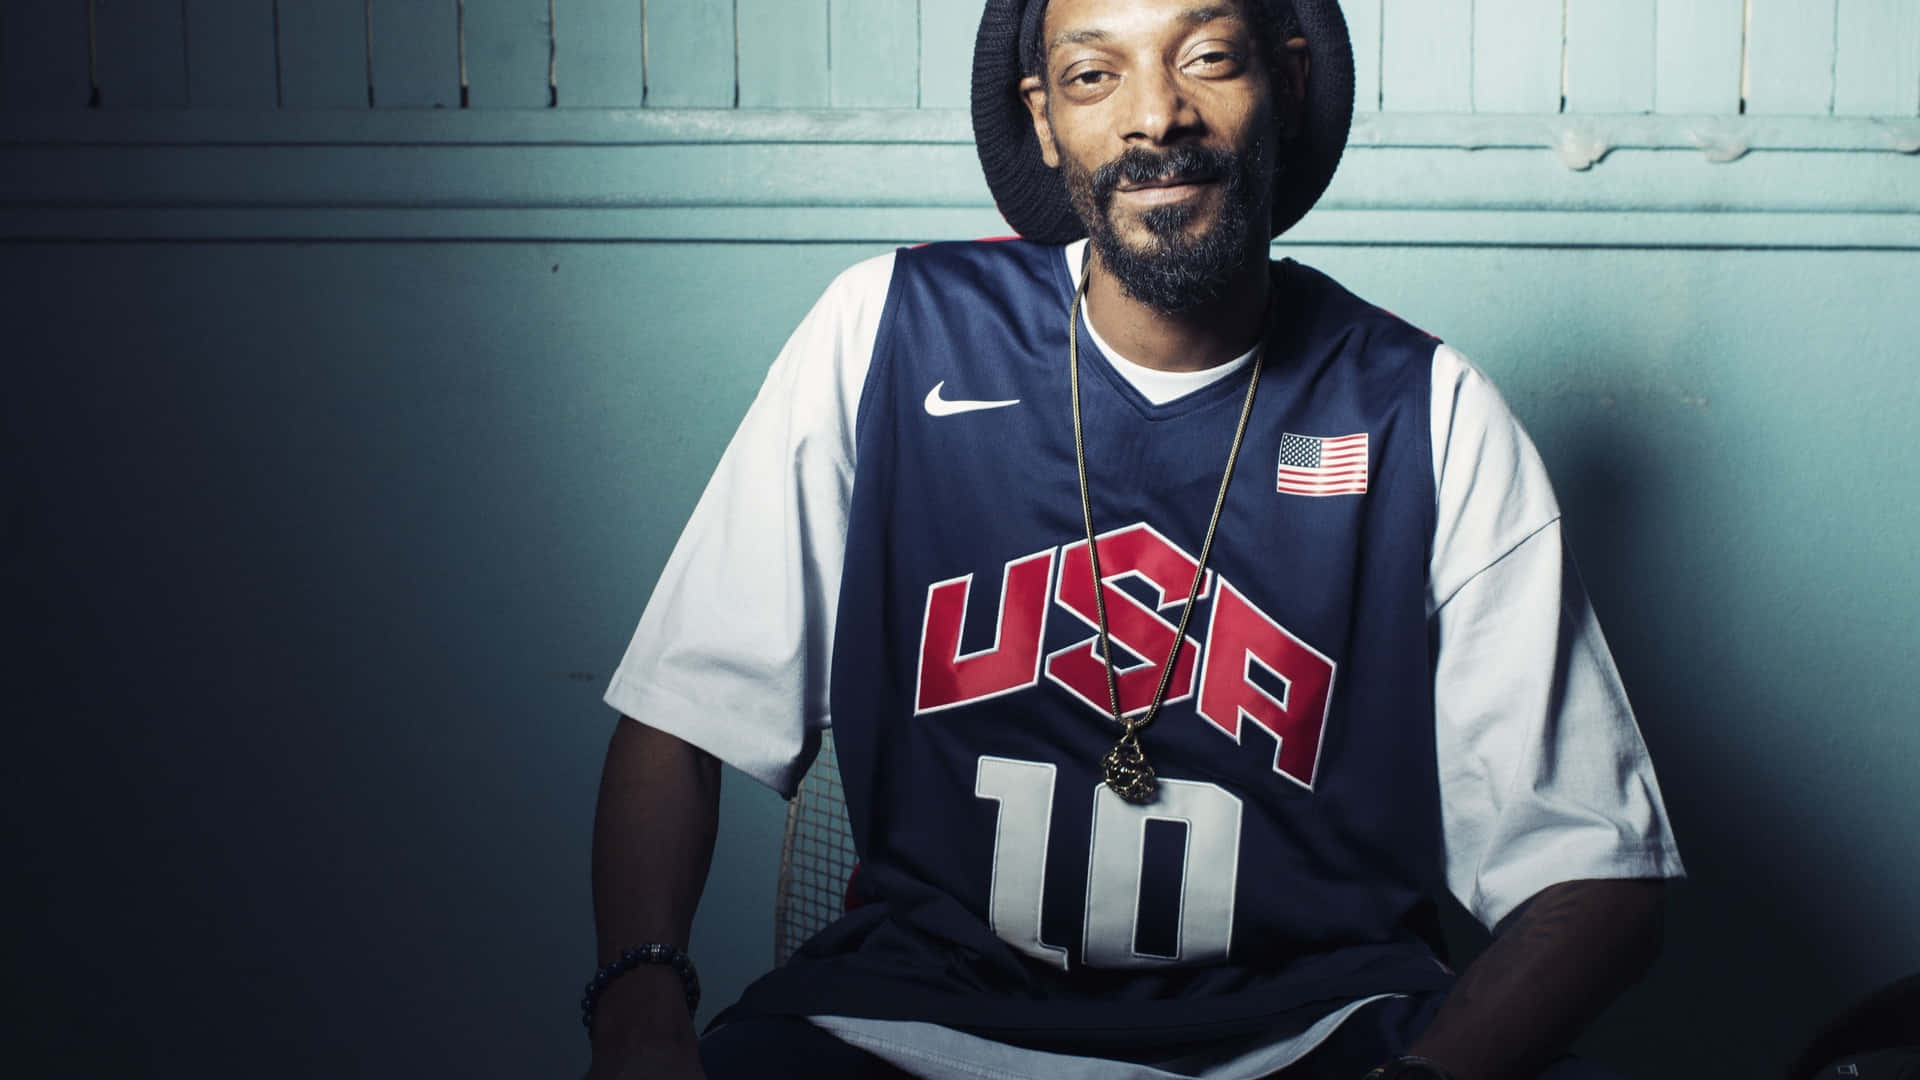 Eljoven Snoop Dogg En El Estudio Fondo de pantalla